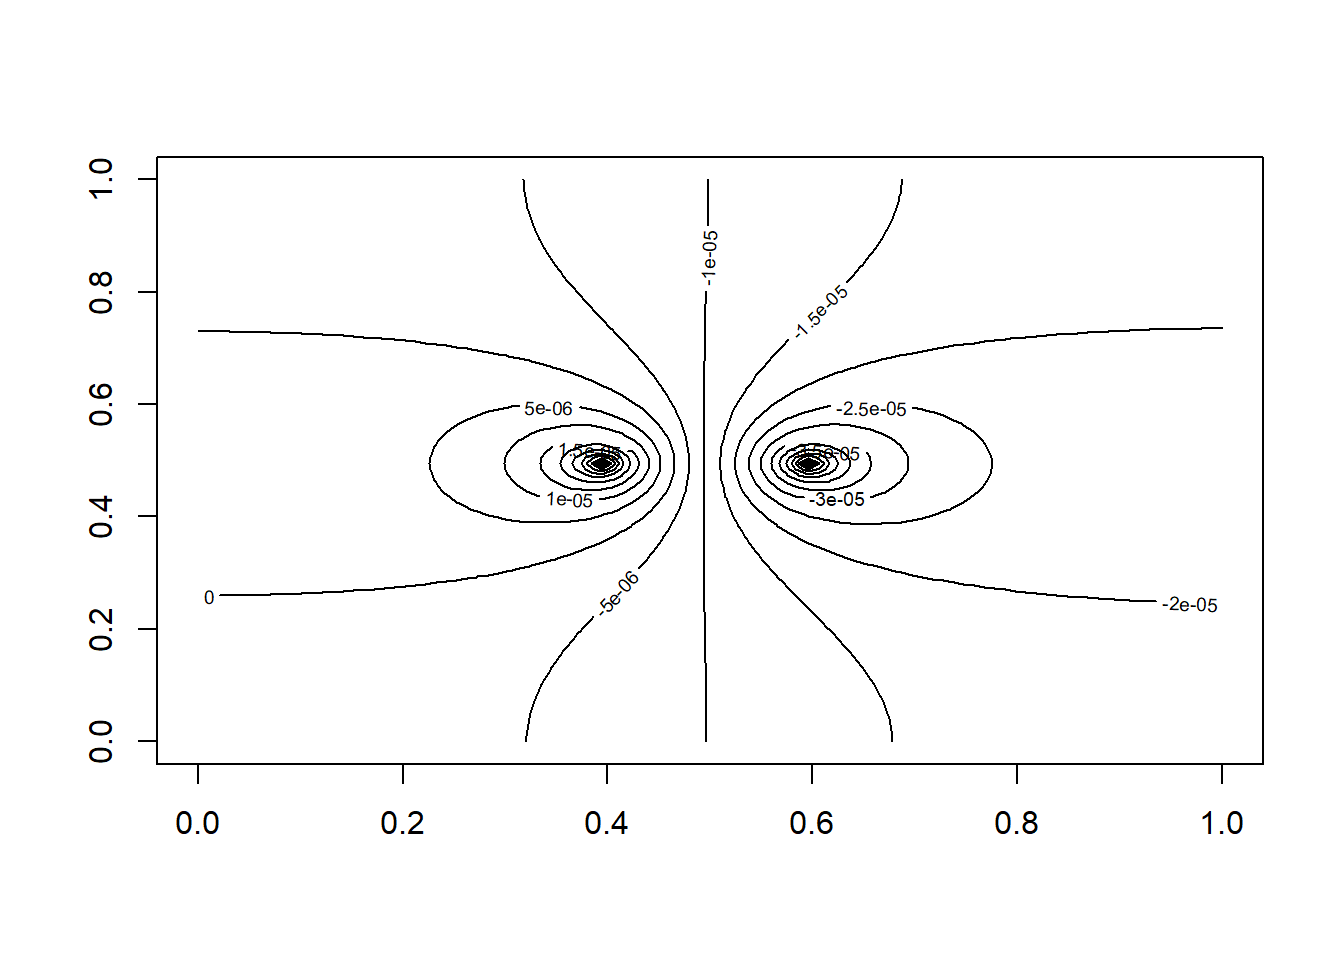 Visualisasi hasil simulasi persamaan Poisson pada kondisi tunak menggunakan paket ReacTran